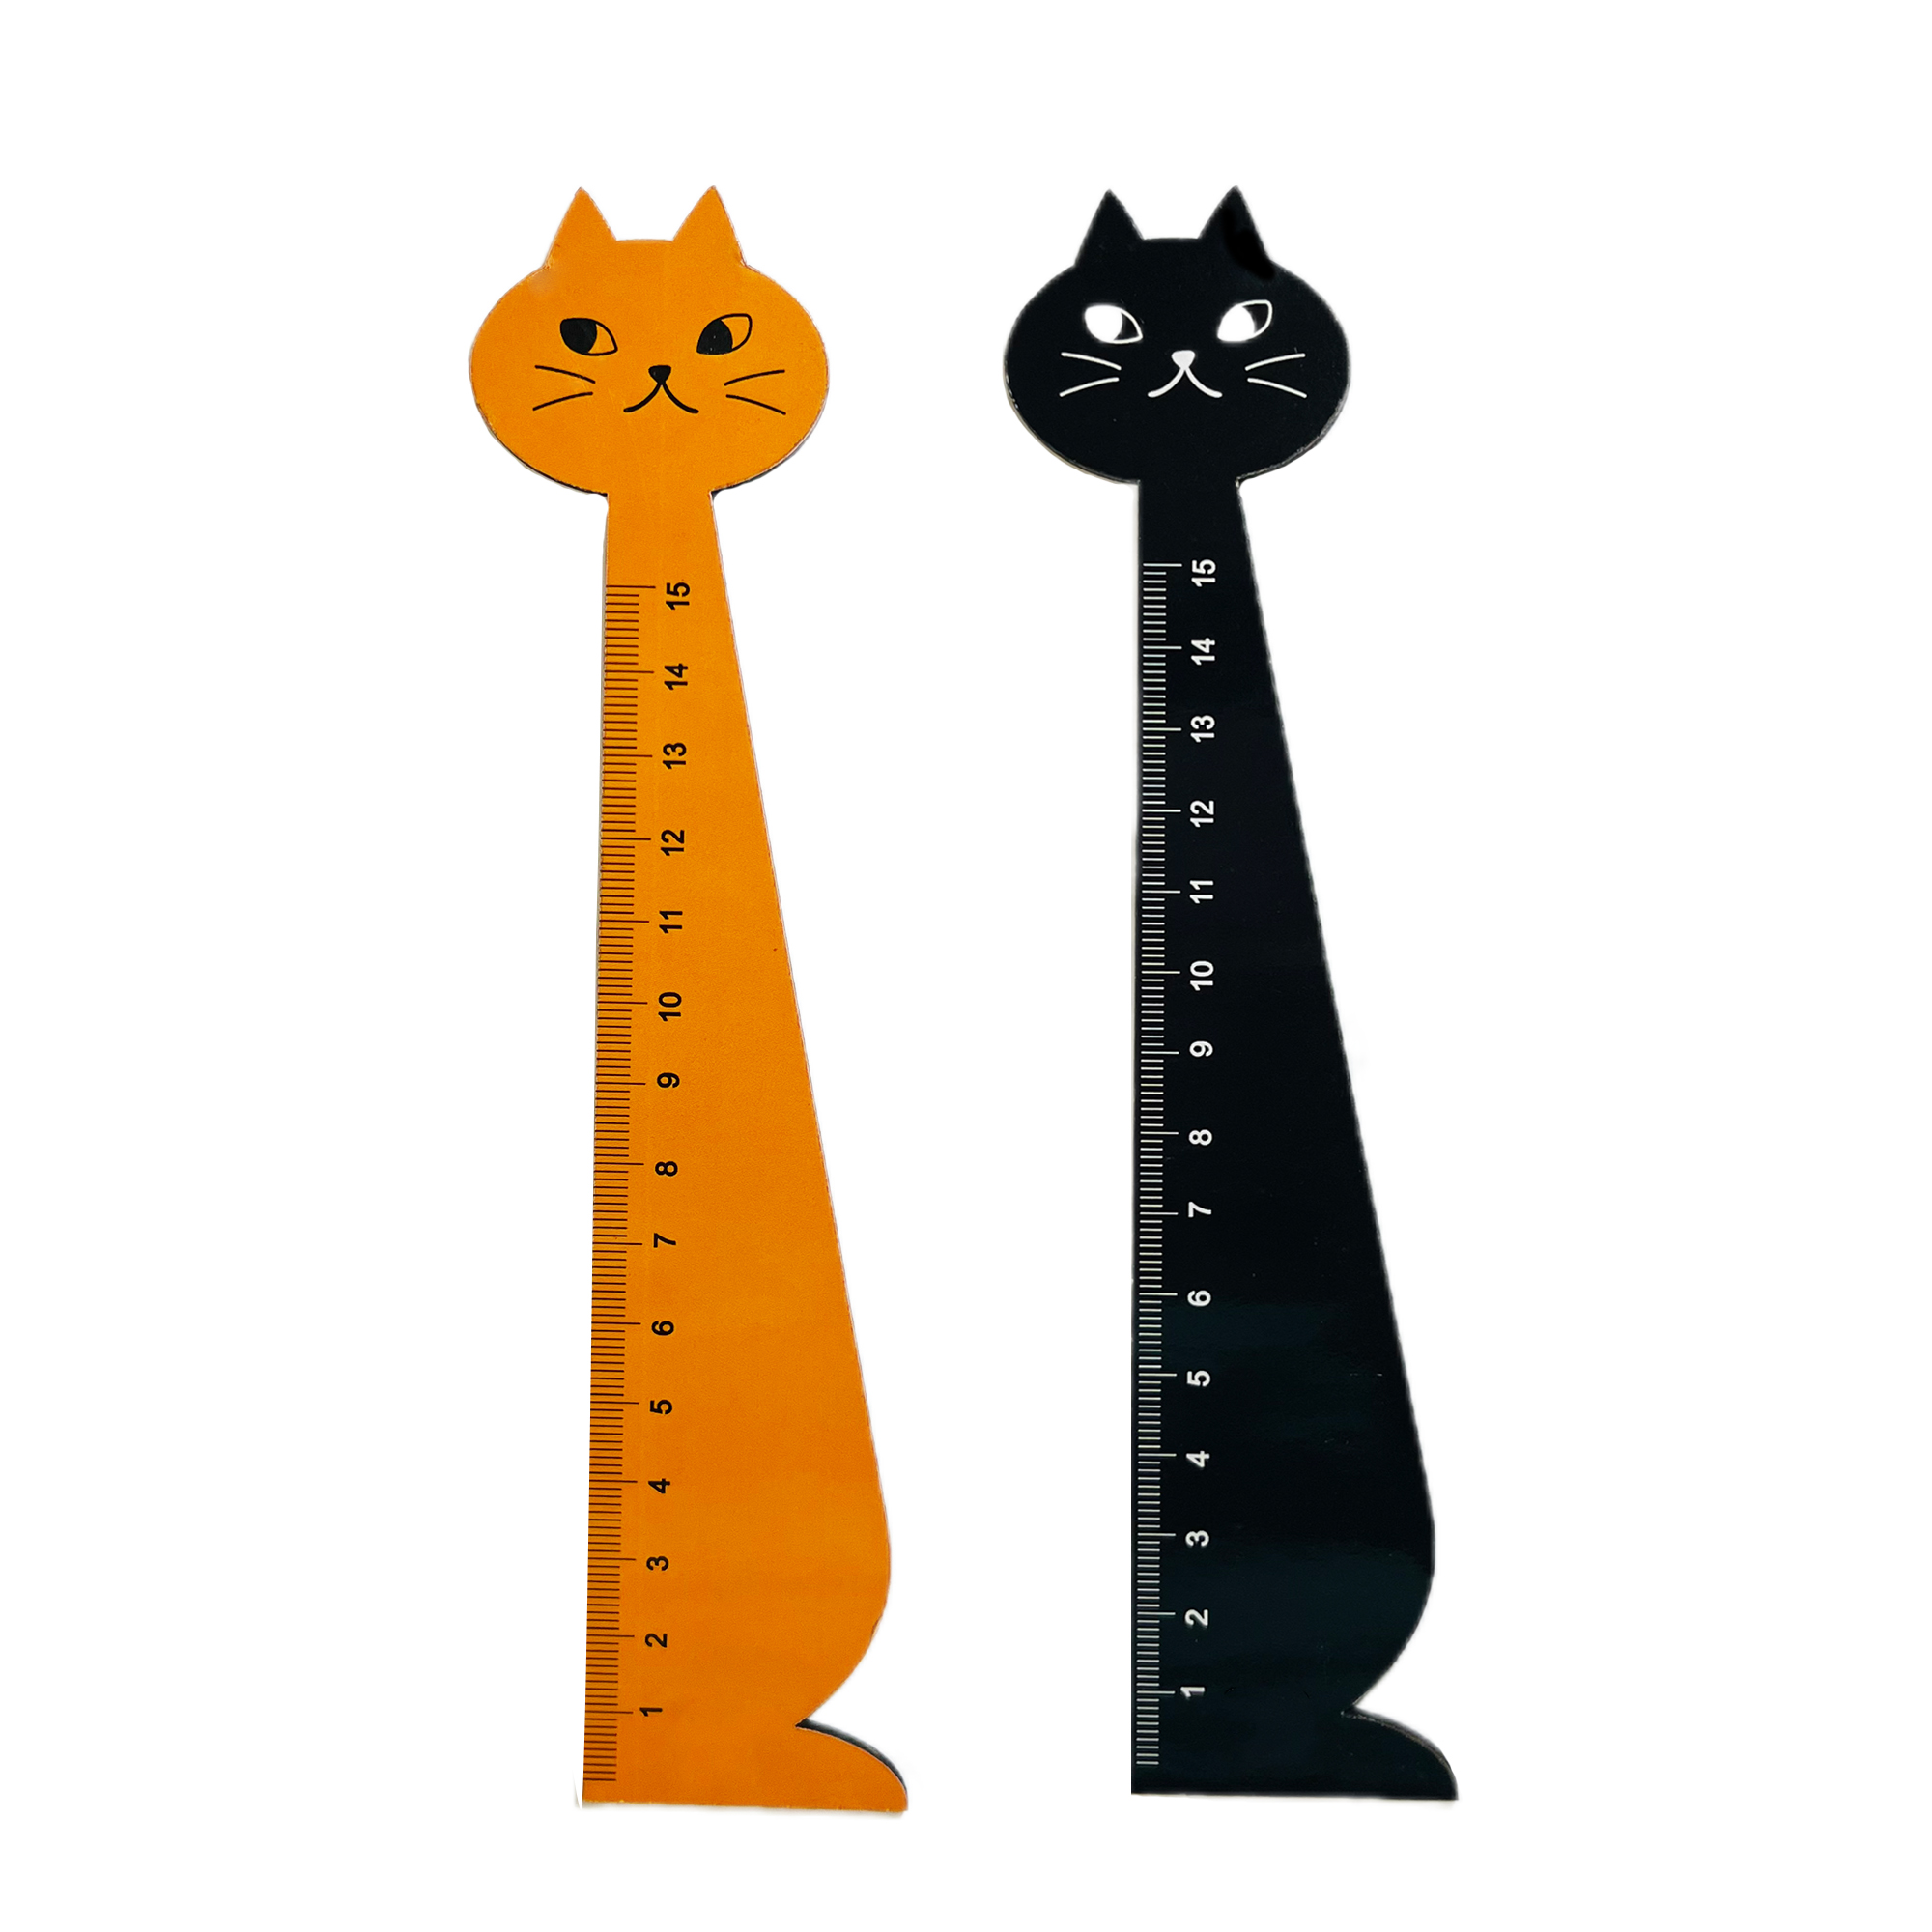 خط کش 15 سانتیمتری مدل گربه مجموعه 2 عددی